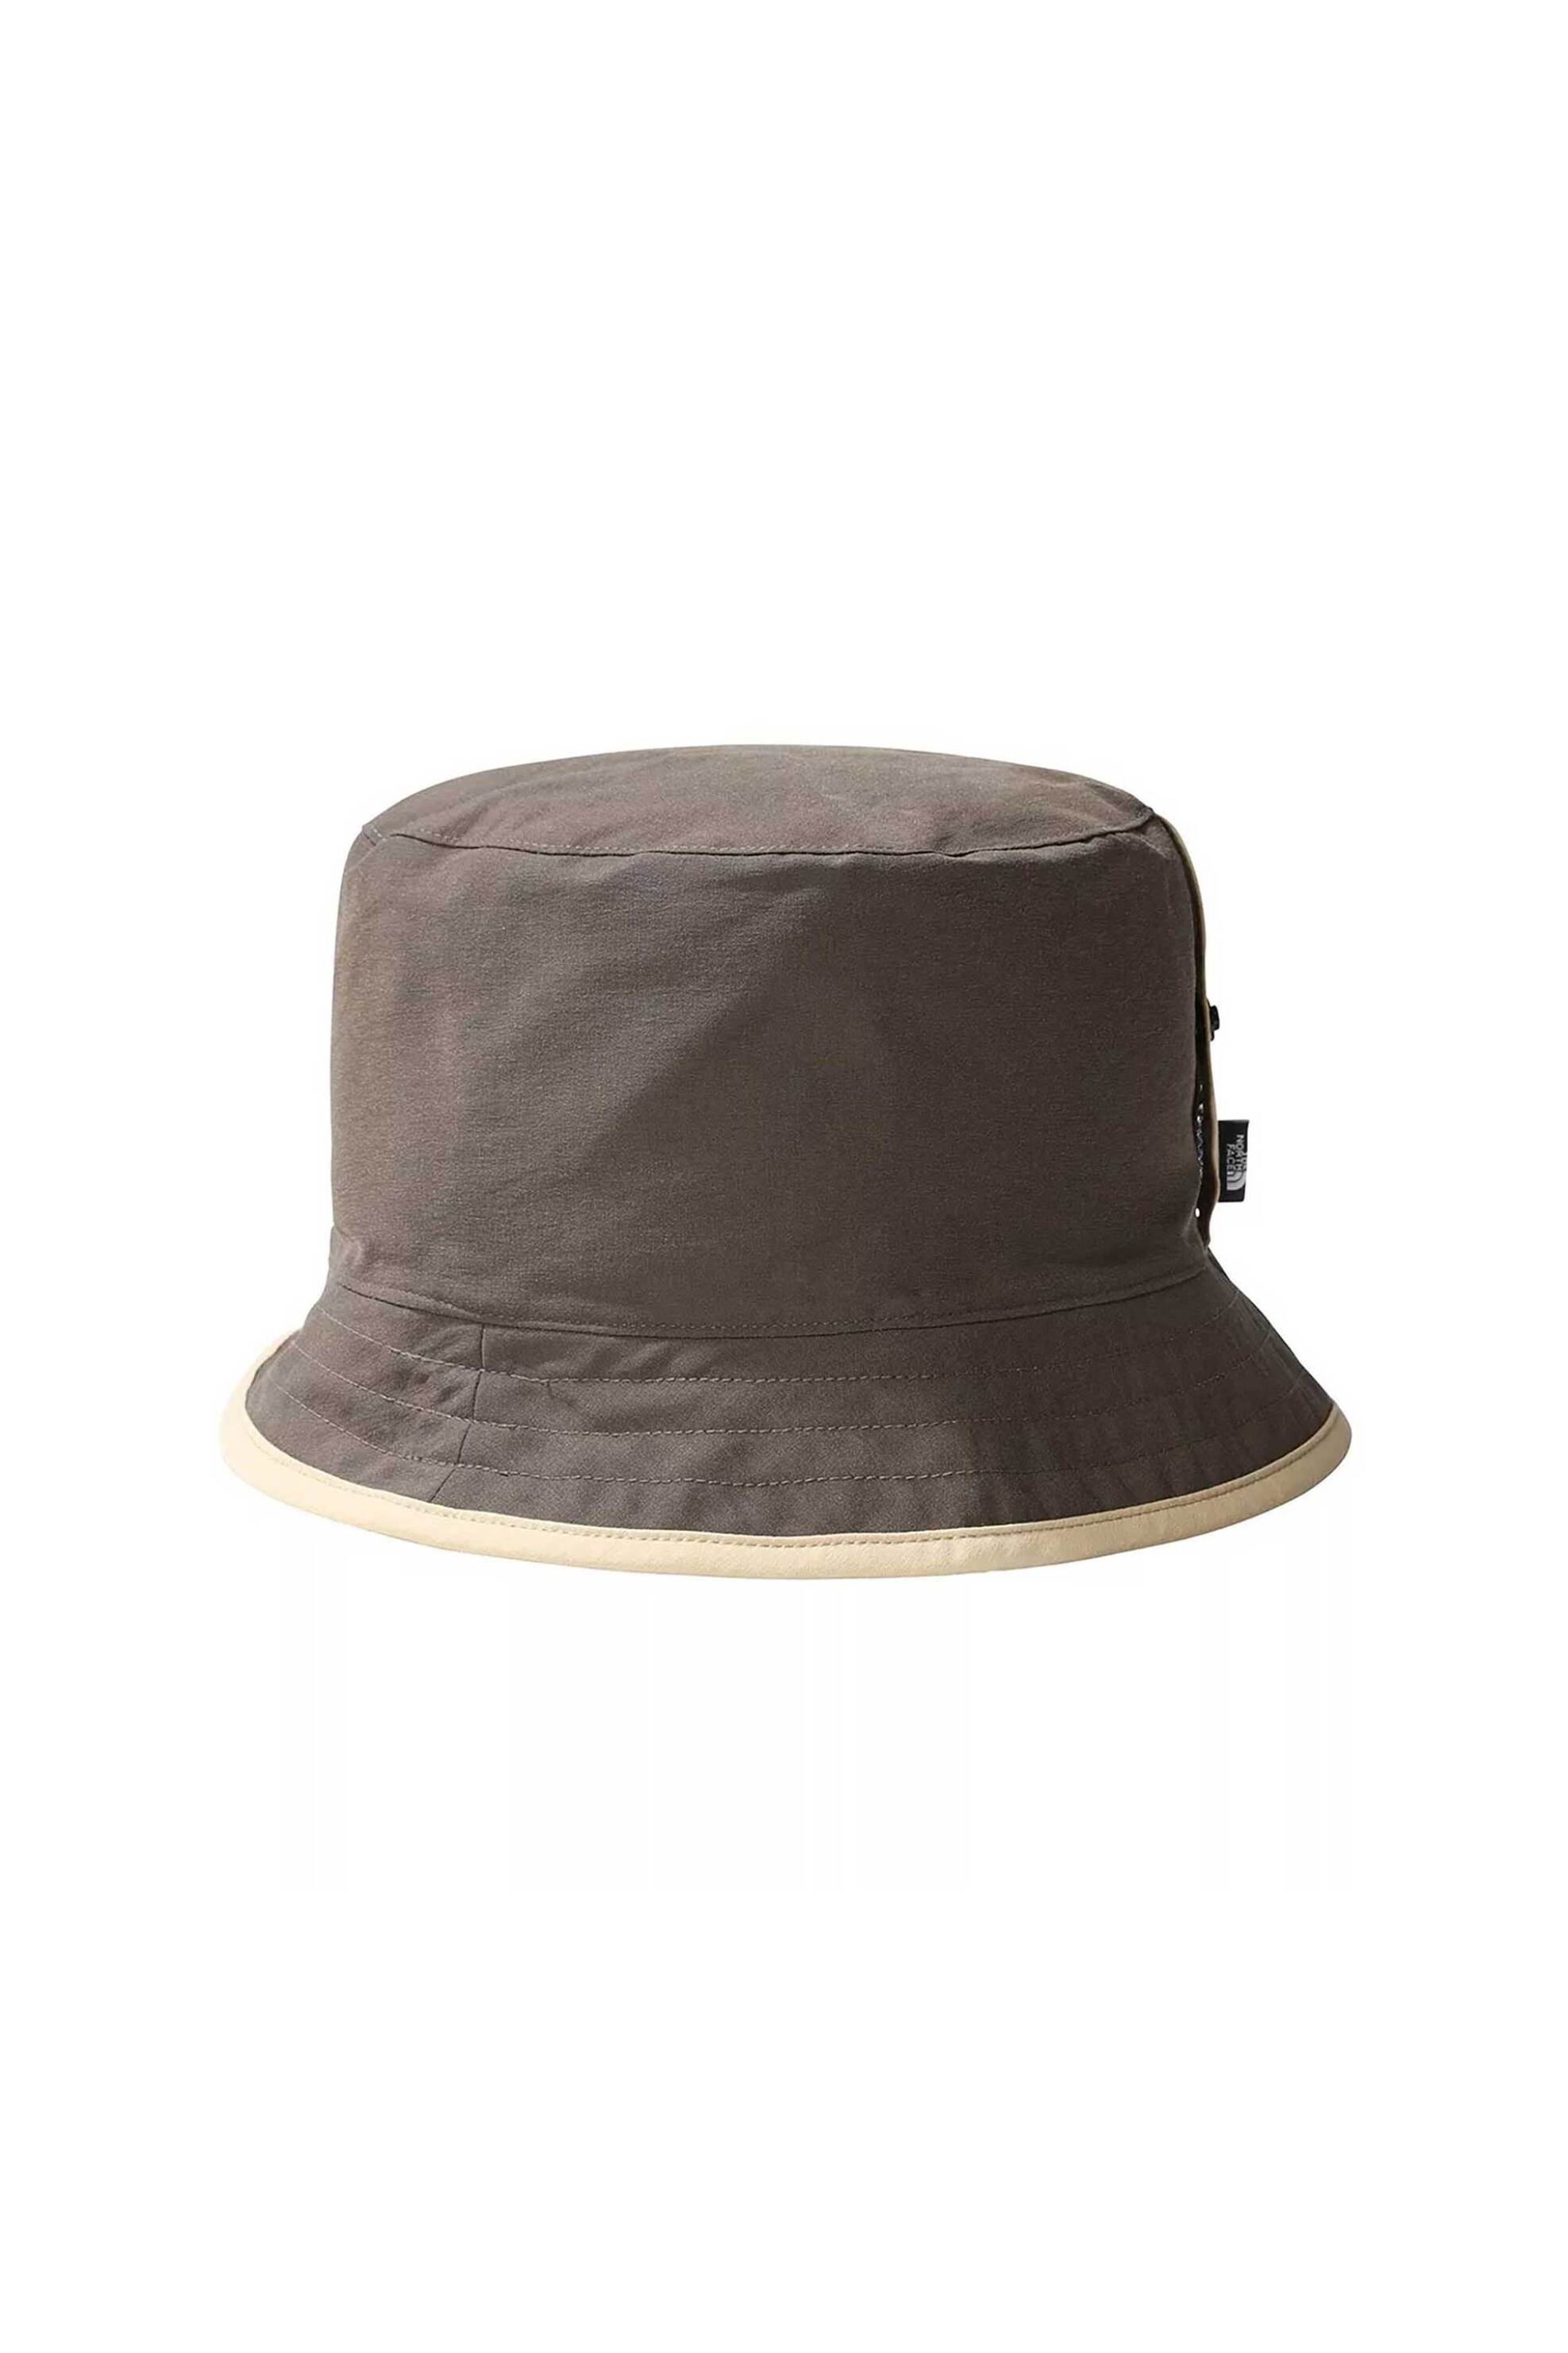 Ανδρική Μόδα > Ανδρικά Αξεσουάρ > Ανδρικά Καπέλα & Σκούφοι The North Face unisex καπέλο bucket με logo label στο πλάι "Class V Reversible" - NF0A7WGYRV41 Χακί